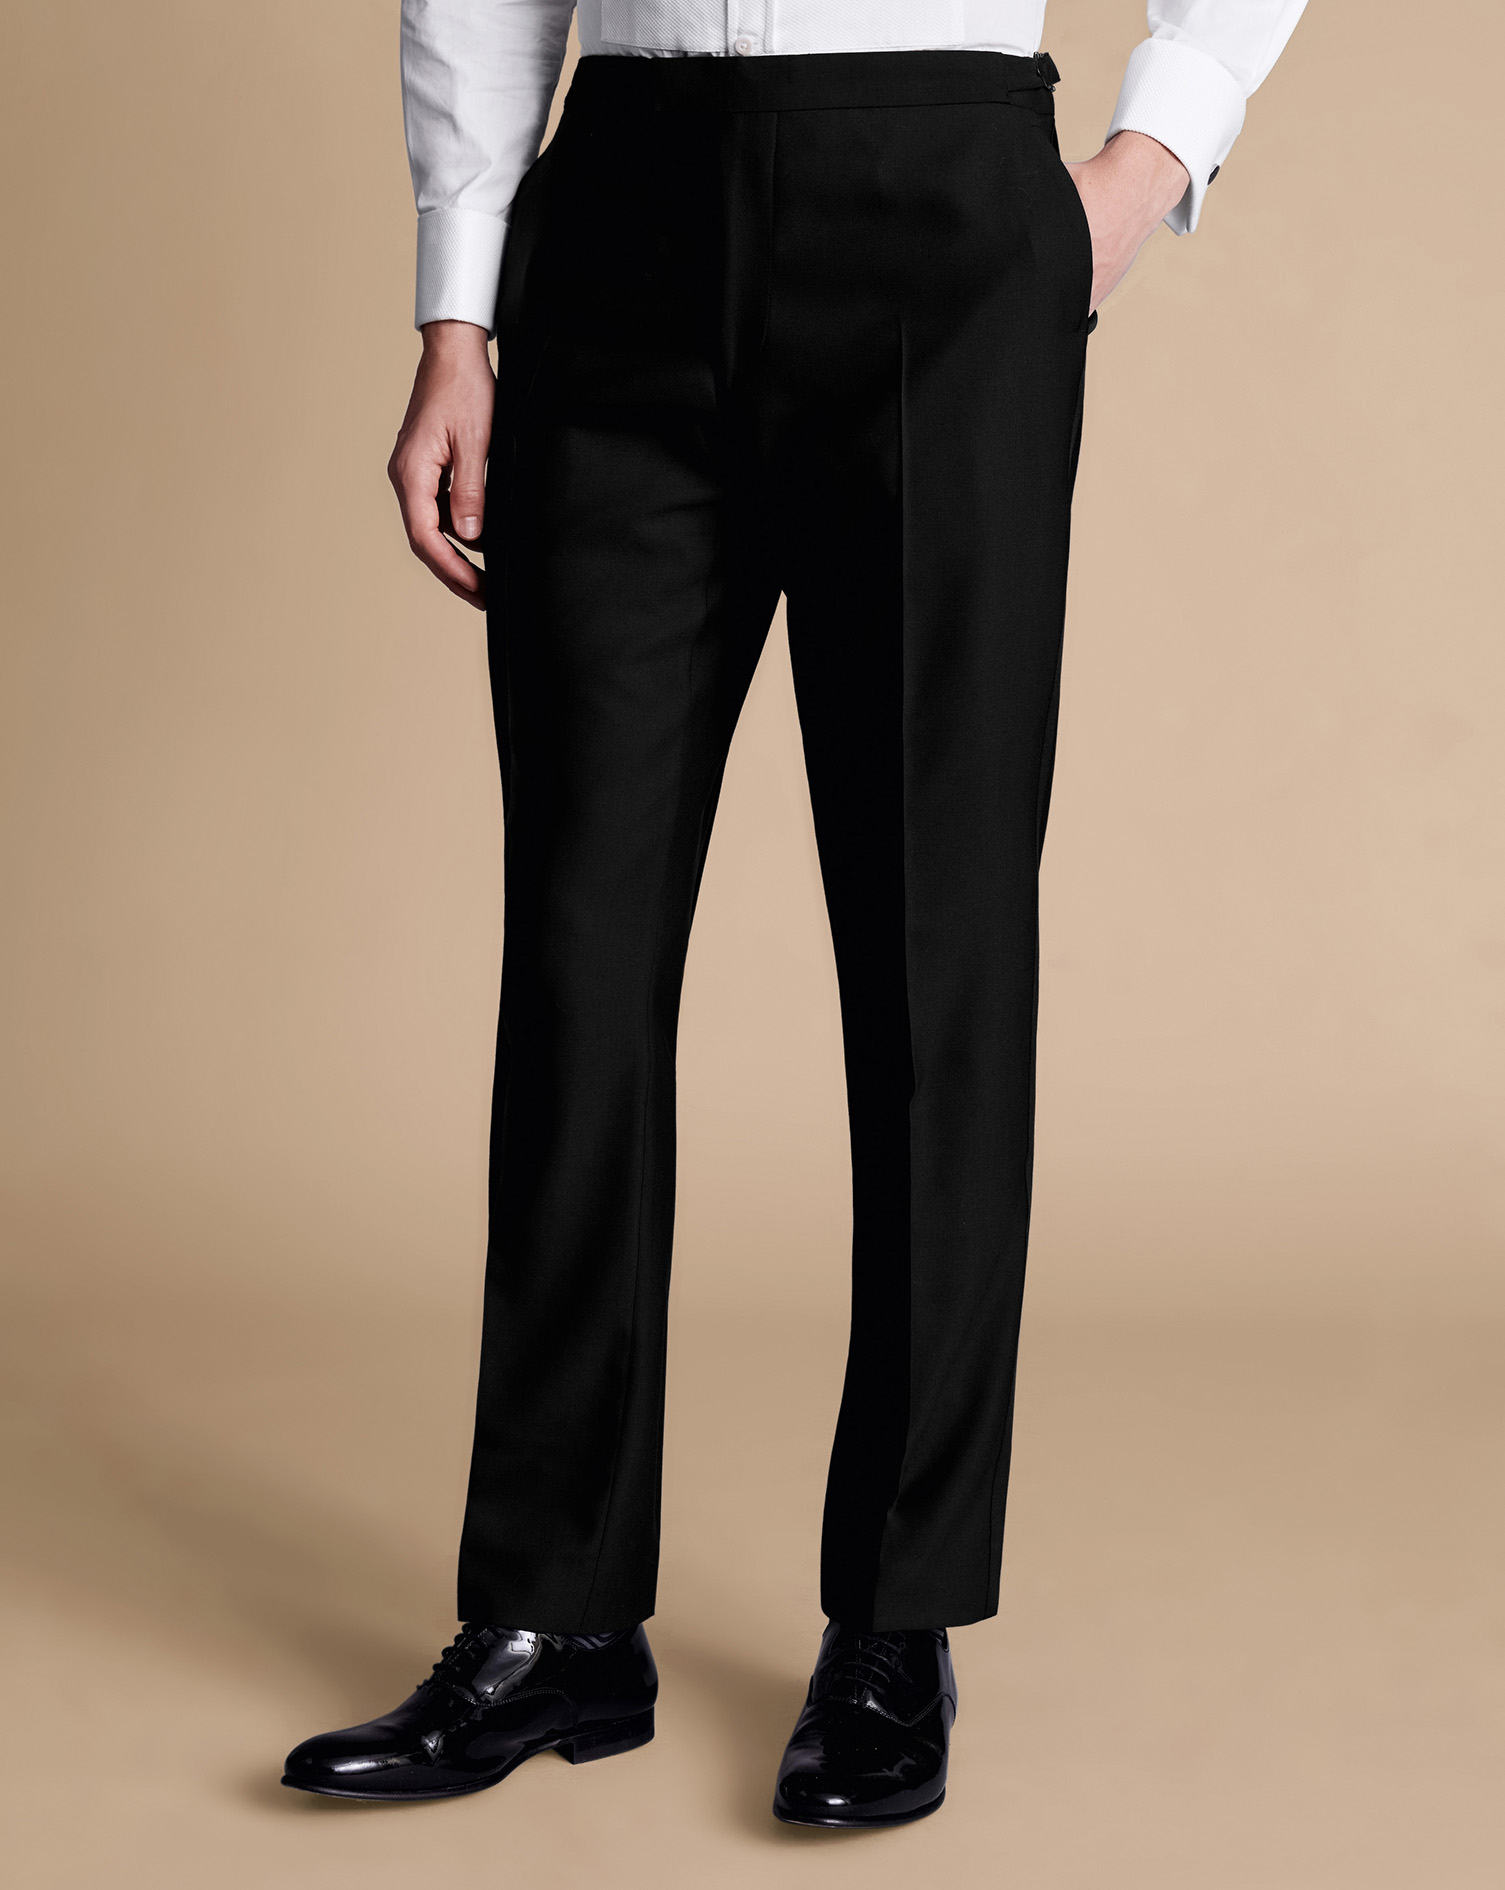 Men's Charles Tyrwhitt Dinner Suit Trousers - Black Size 38/38 Wool
